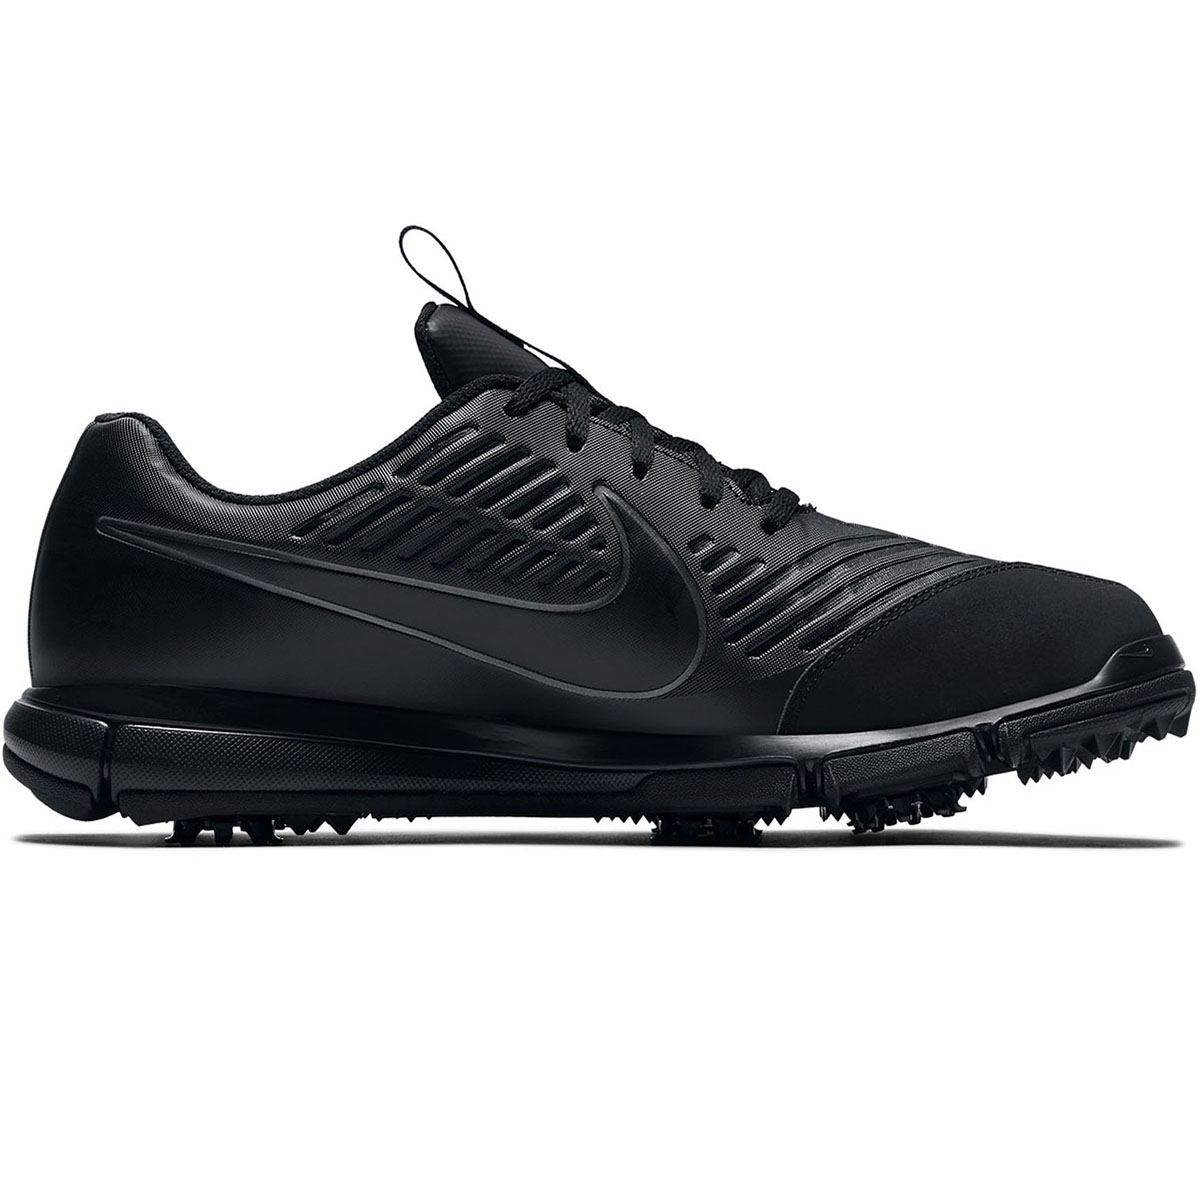 Específicamente porcelana Plasticidad Nike Golf Explorer 2 S Shoes | Online Golf